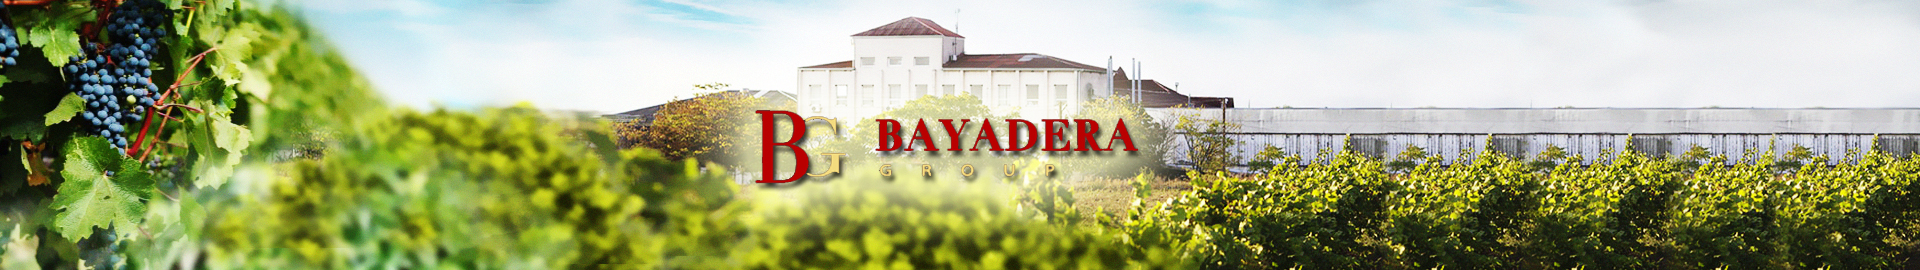 Bayadera Group